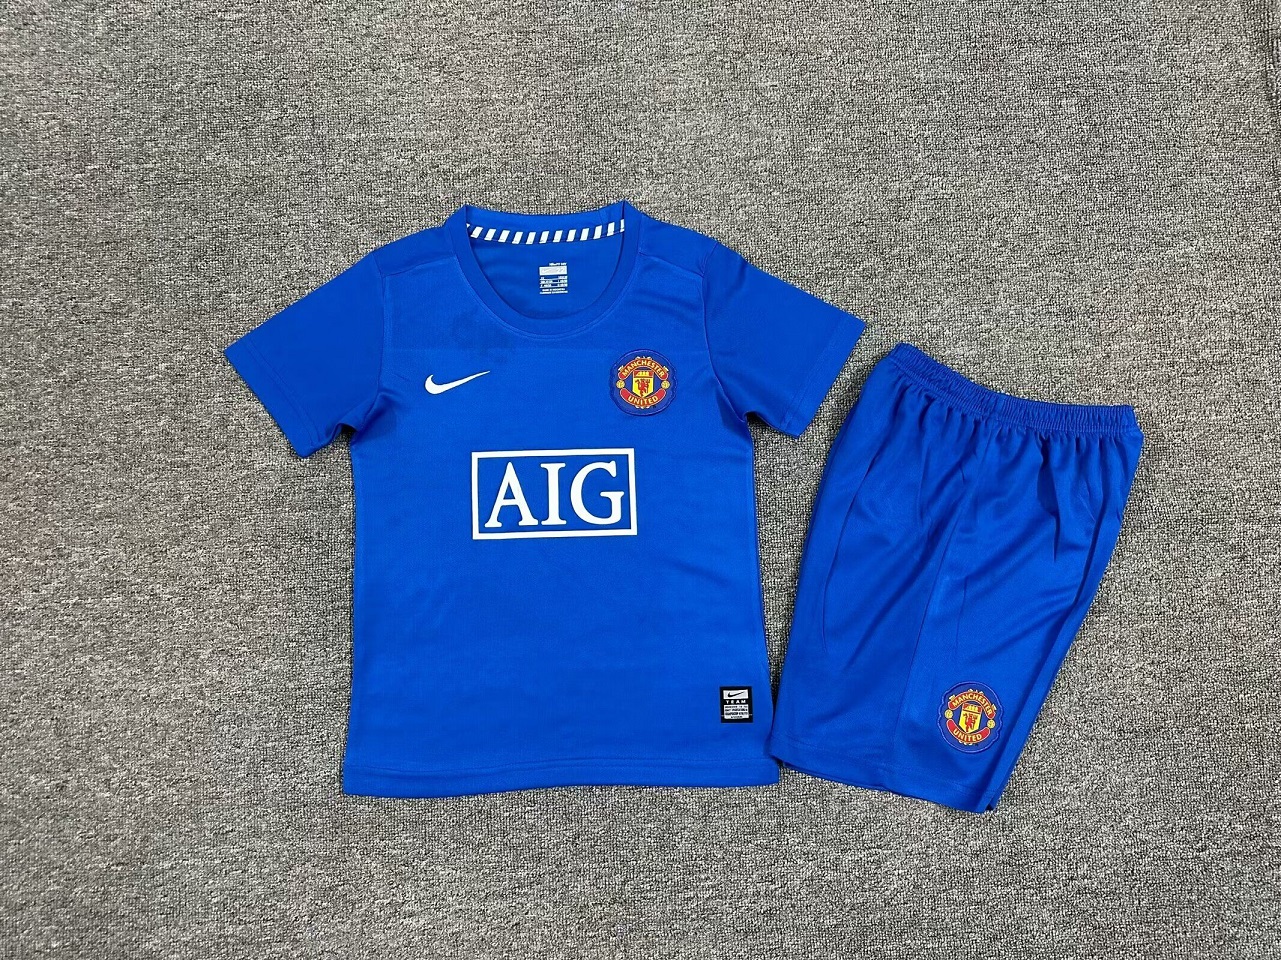 Kids-Manchester Utd 08/09 Third Blue Soccer Jersey